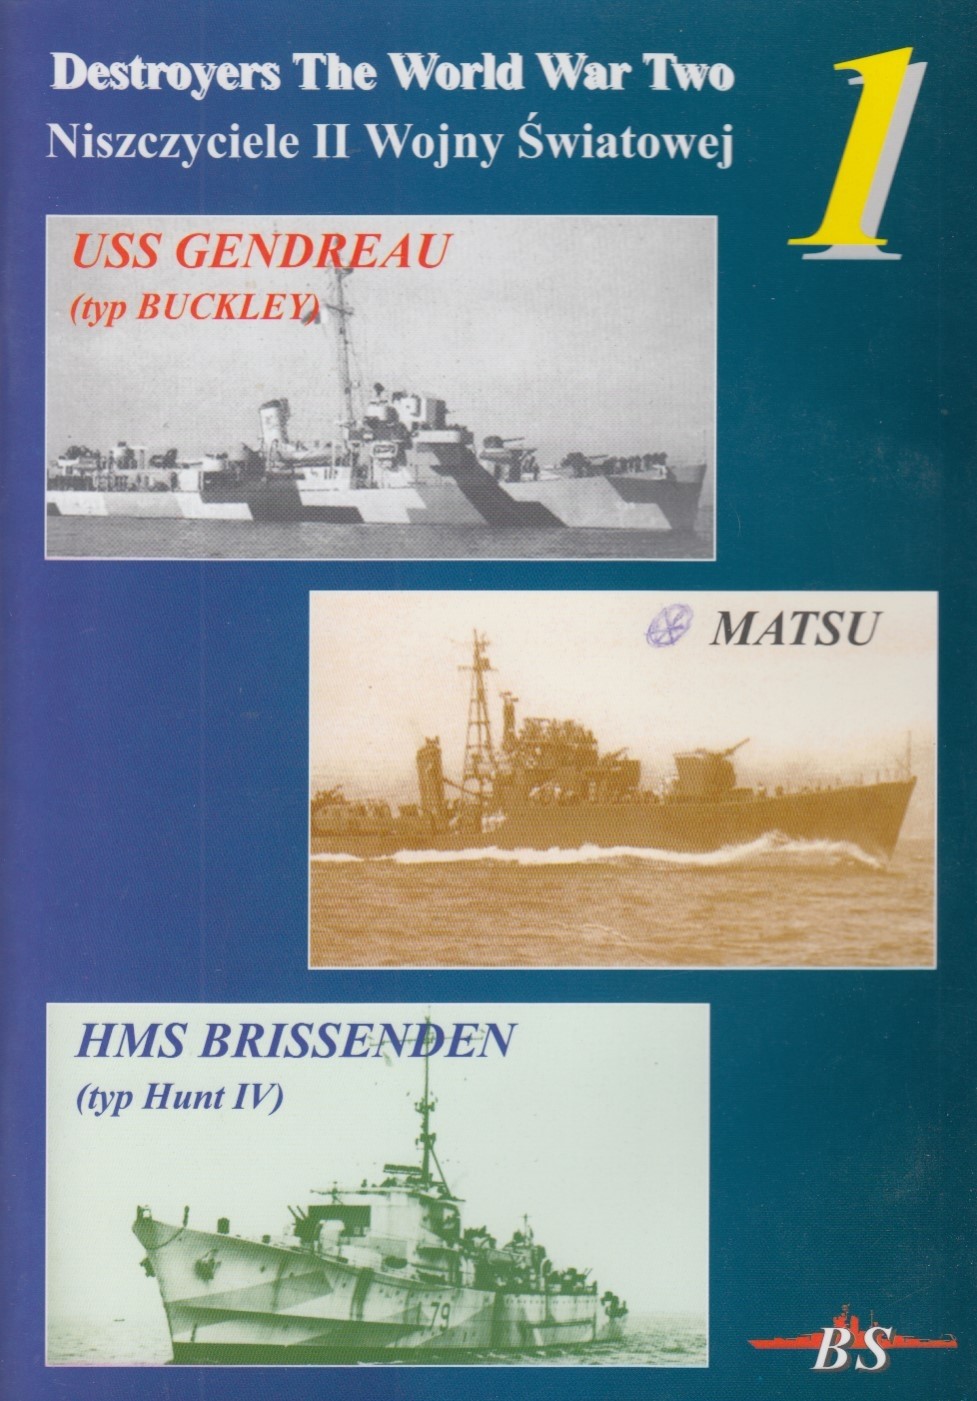 Destroyers of WWII #1: USS Gendreau, IJN Matsu, HMS Brissenden